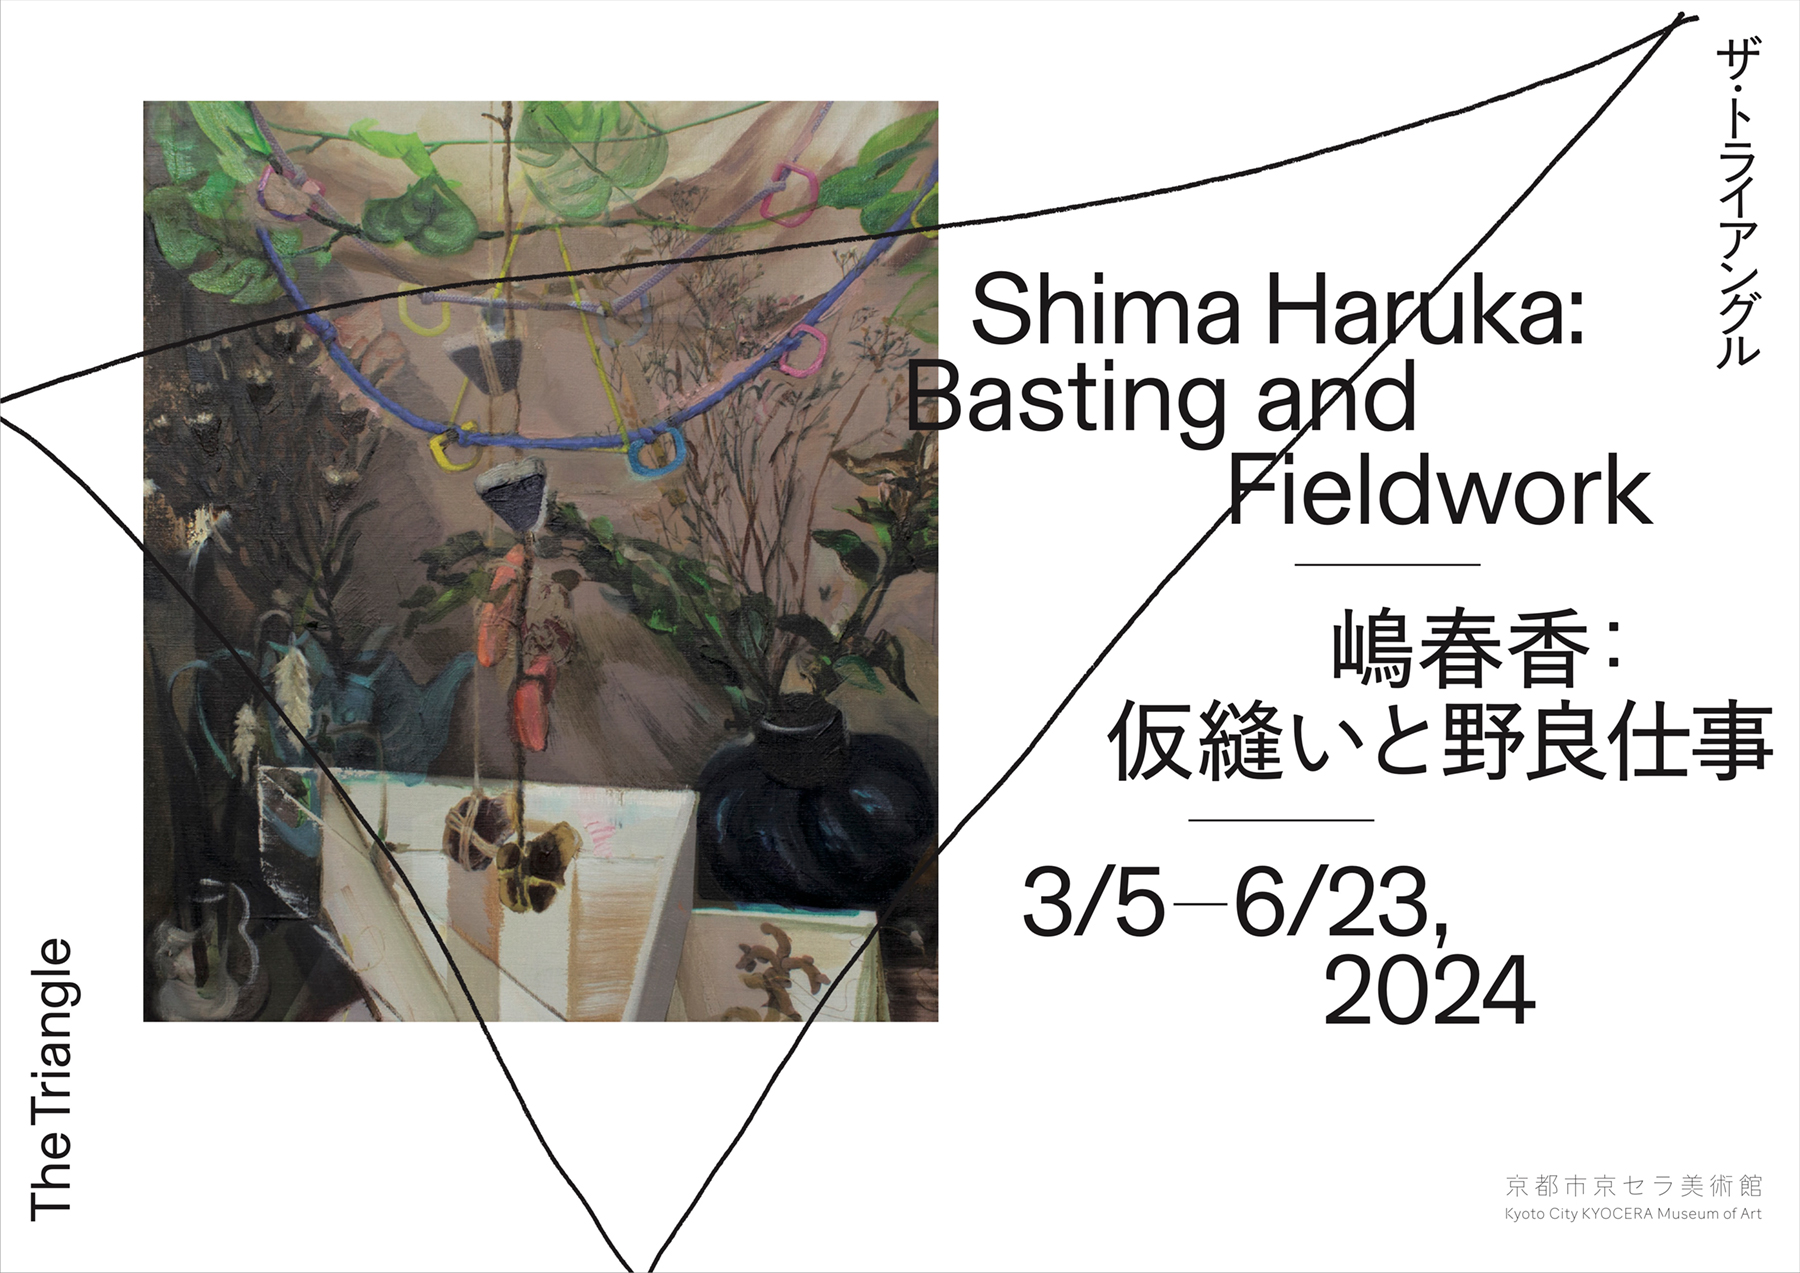 Shima Haruka: Basting and Fieldwork